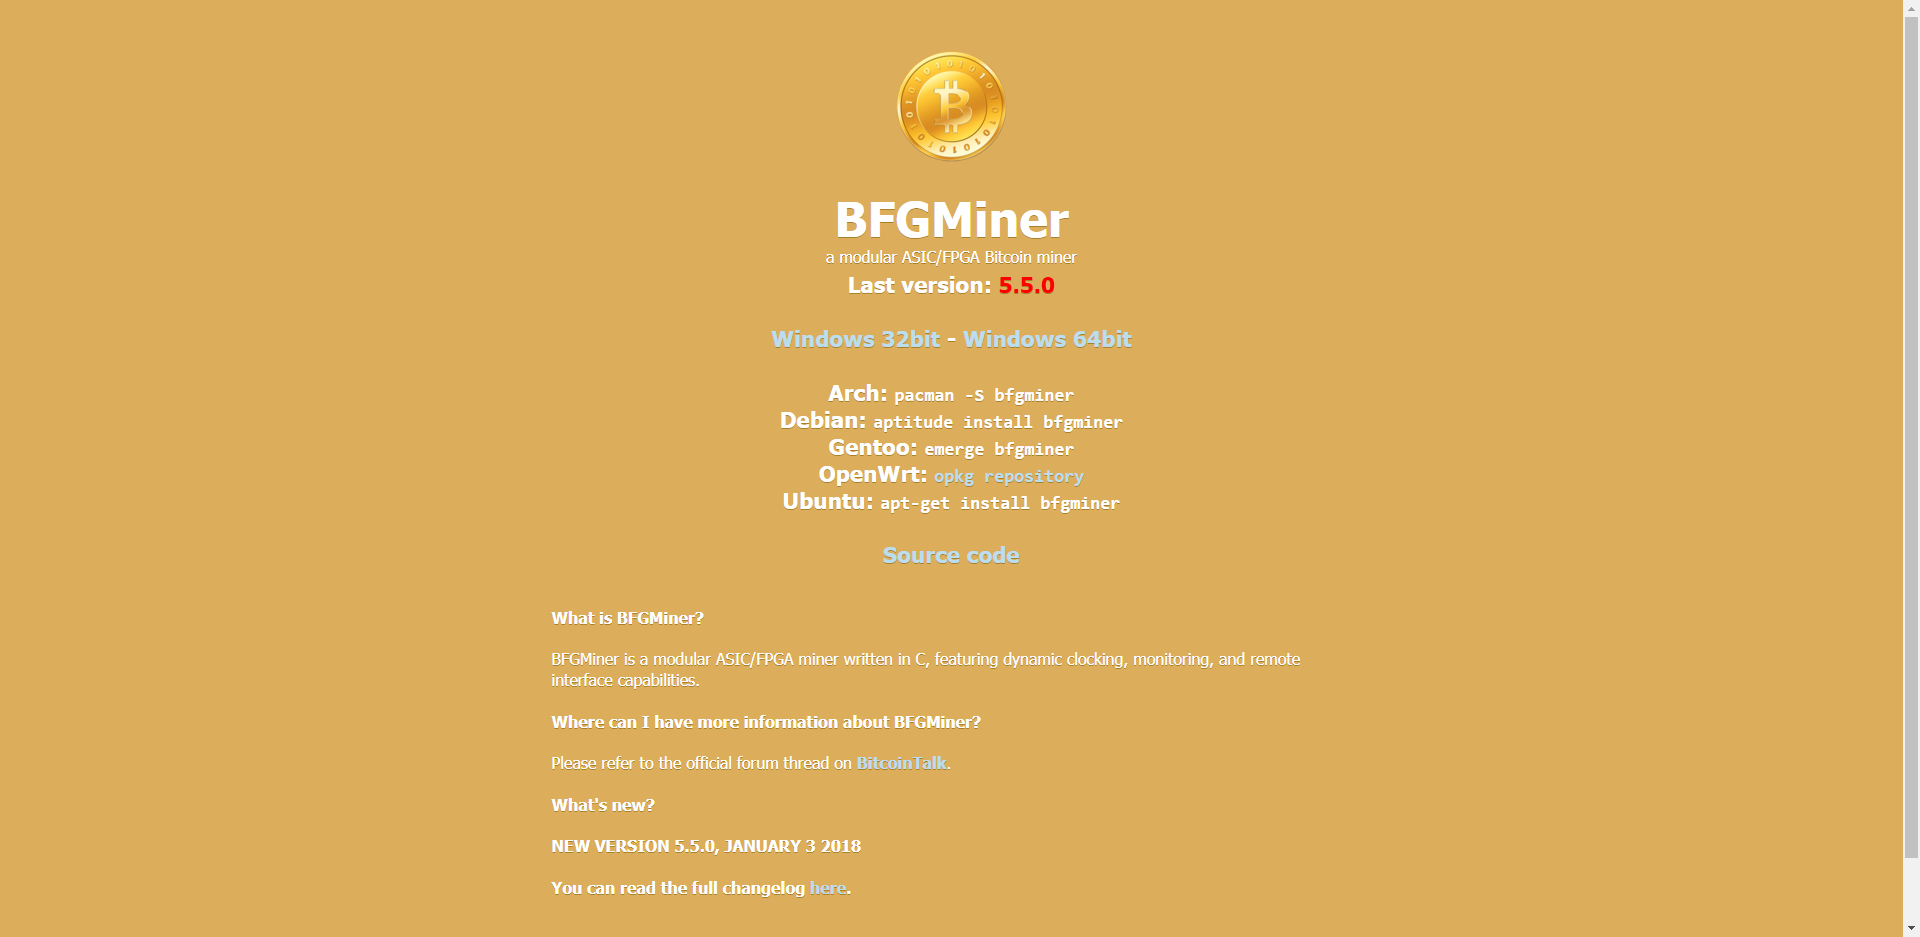 BGF Miner Website Review - CryptoSeptic.com